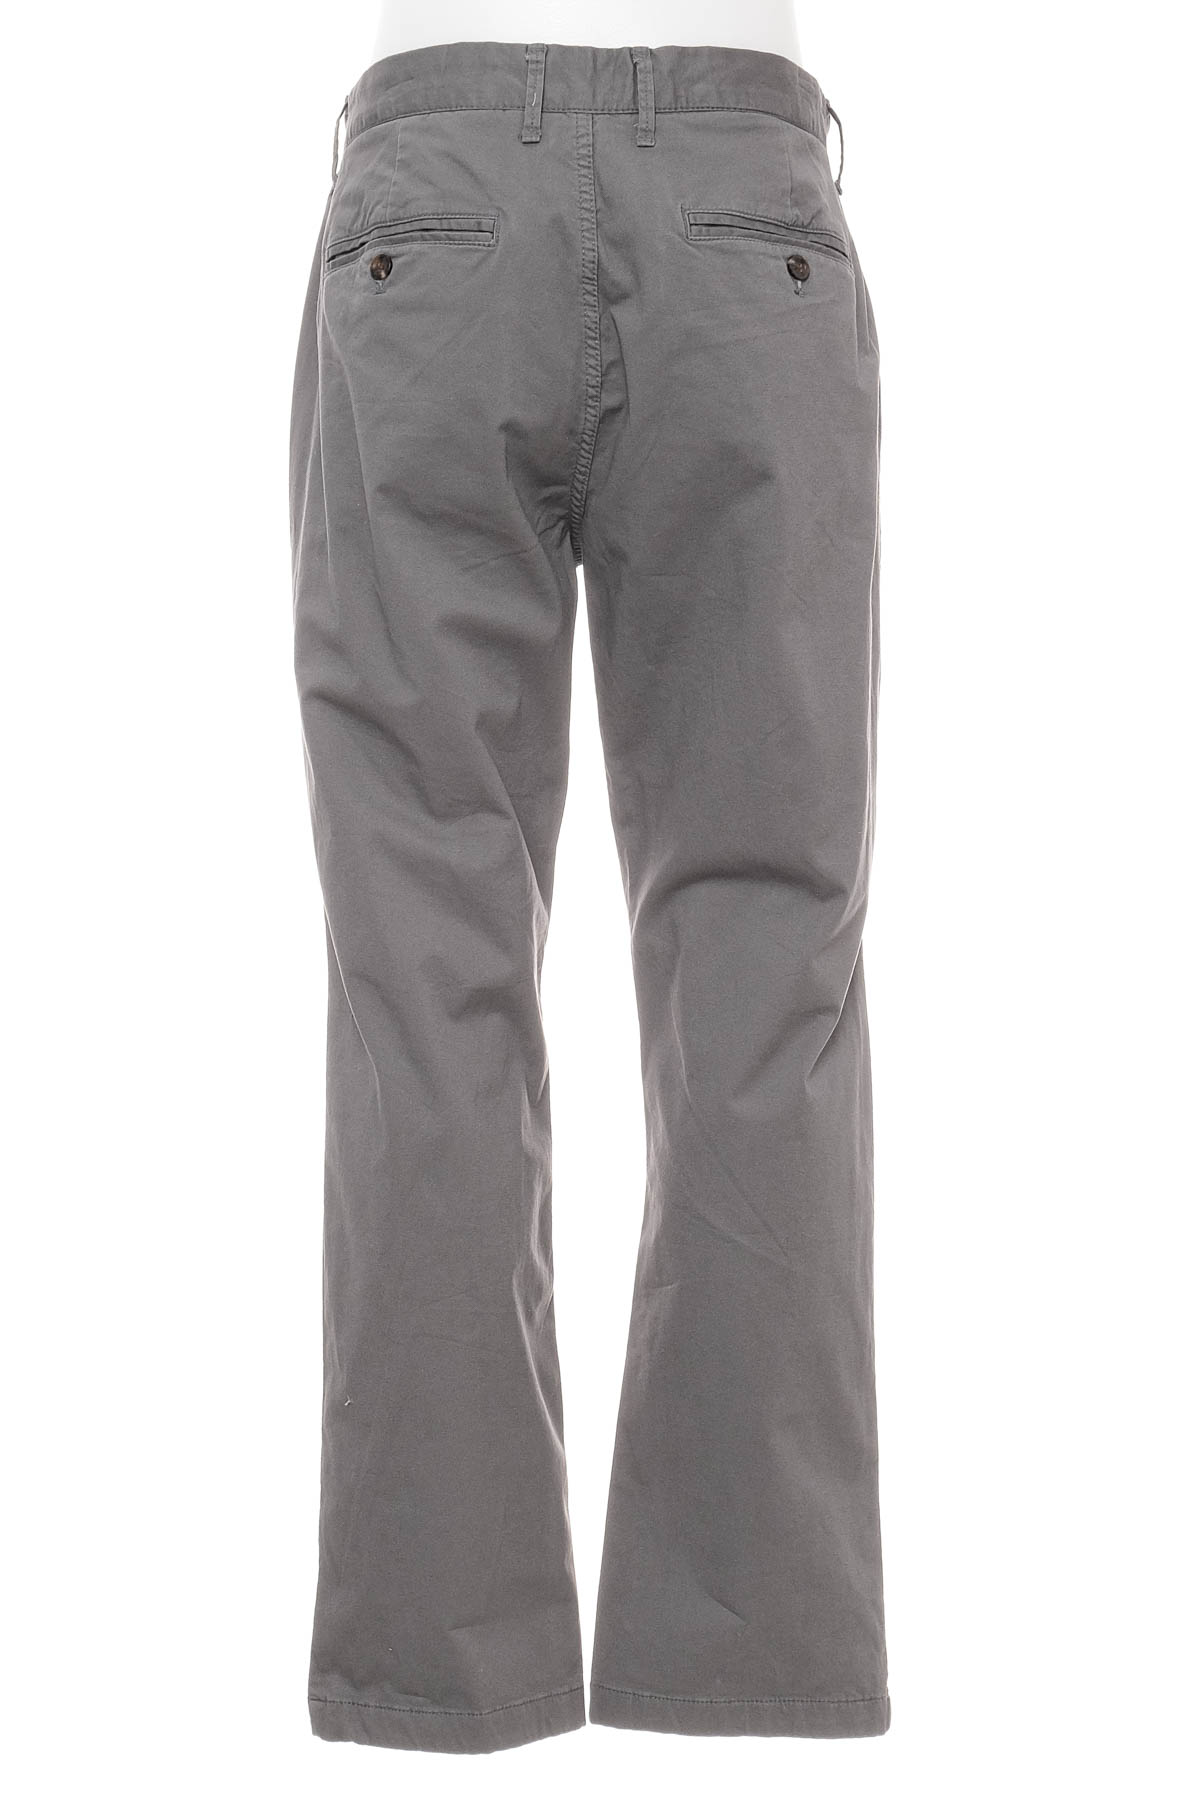 Pantalon pentru bărbați - Goodfellow & Co - 1